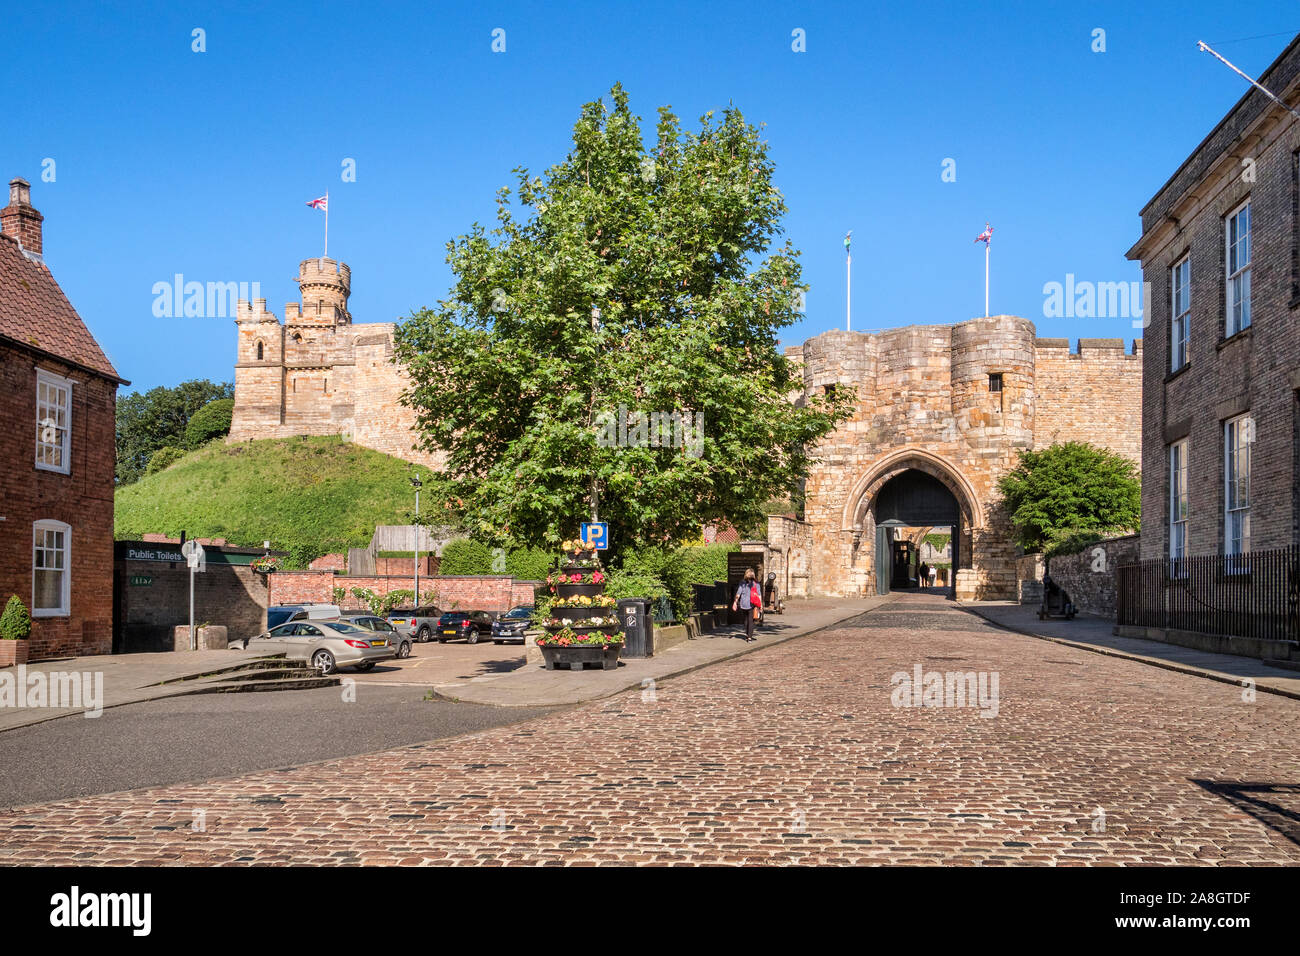 2 Luglio 2019: Lincoln, Regno Unito - L'approccio per l'ingresso al castello di Lincoln, Lincoln, Regno Unito. Foto Stock